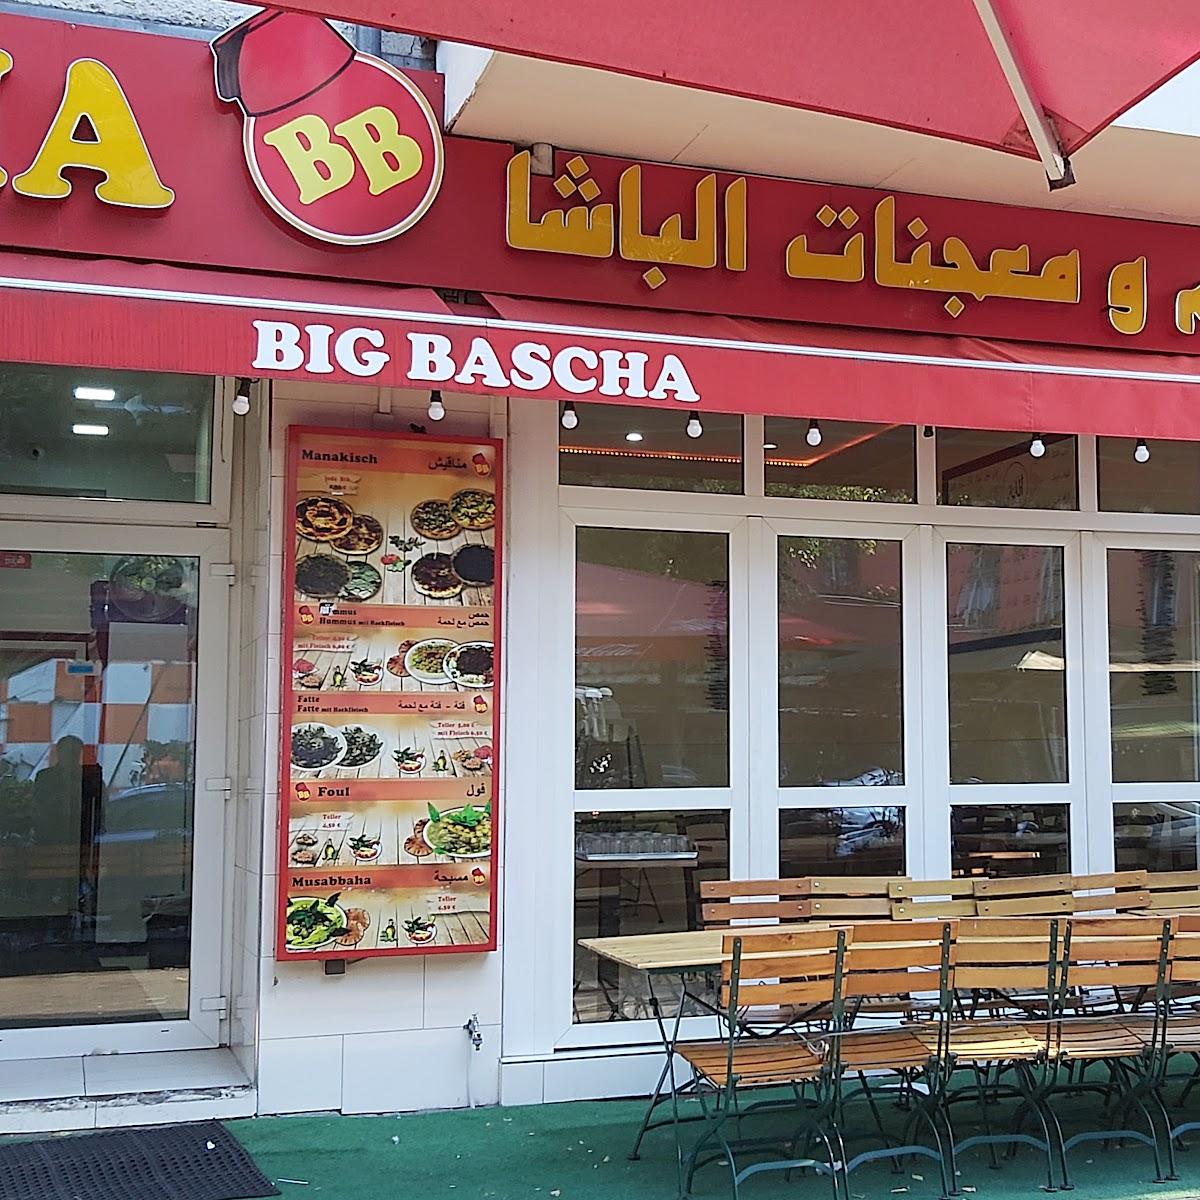 Restaurant "Big Bascha" in Berlin